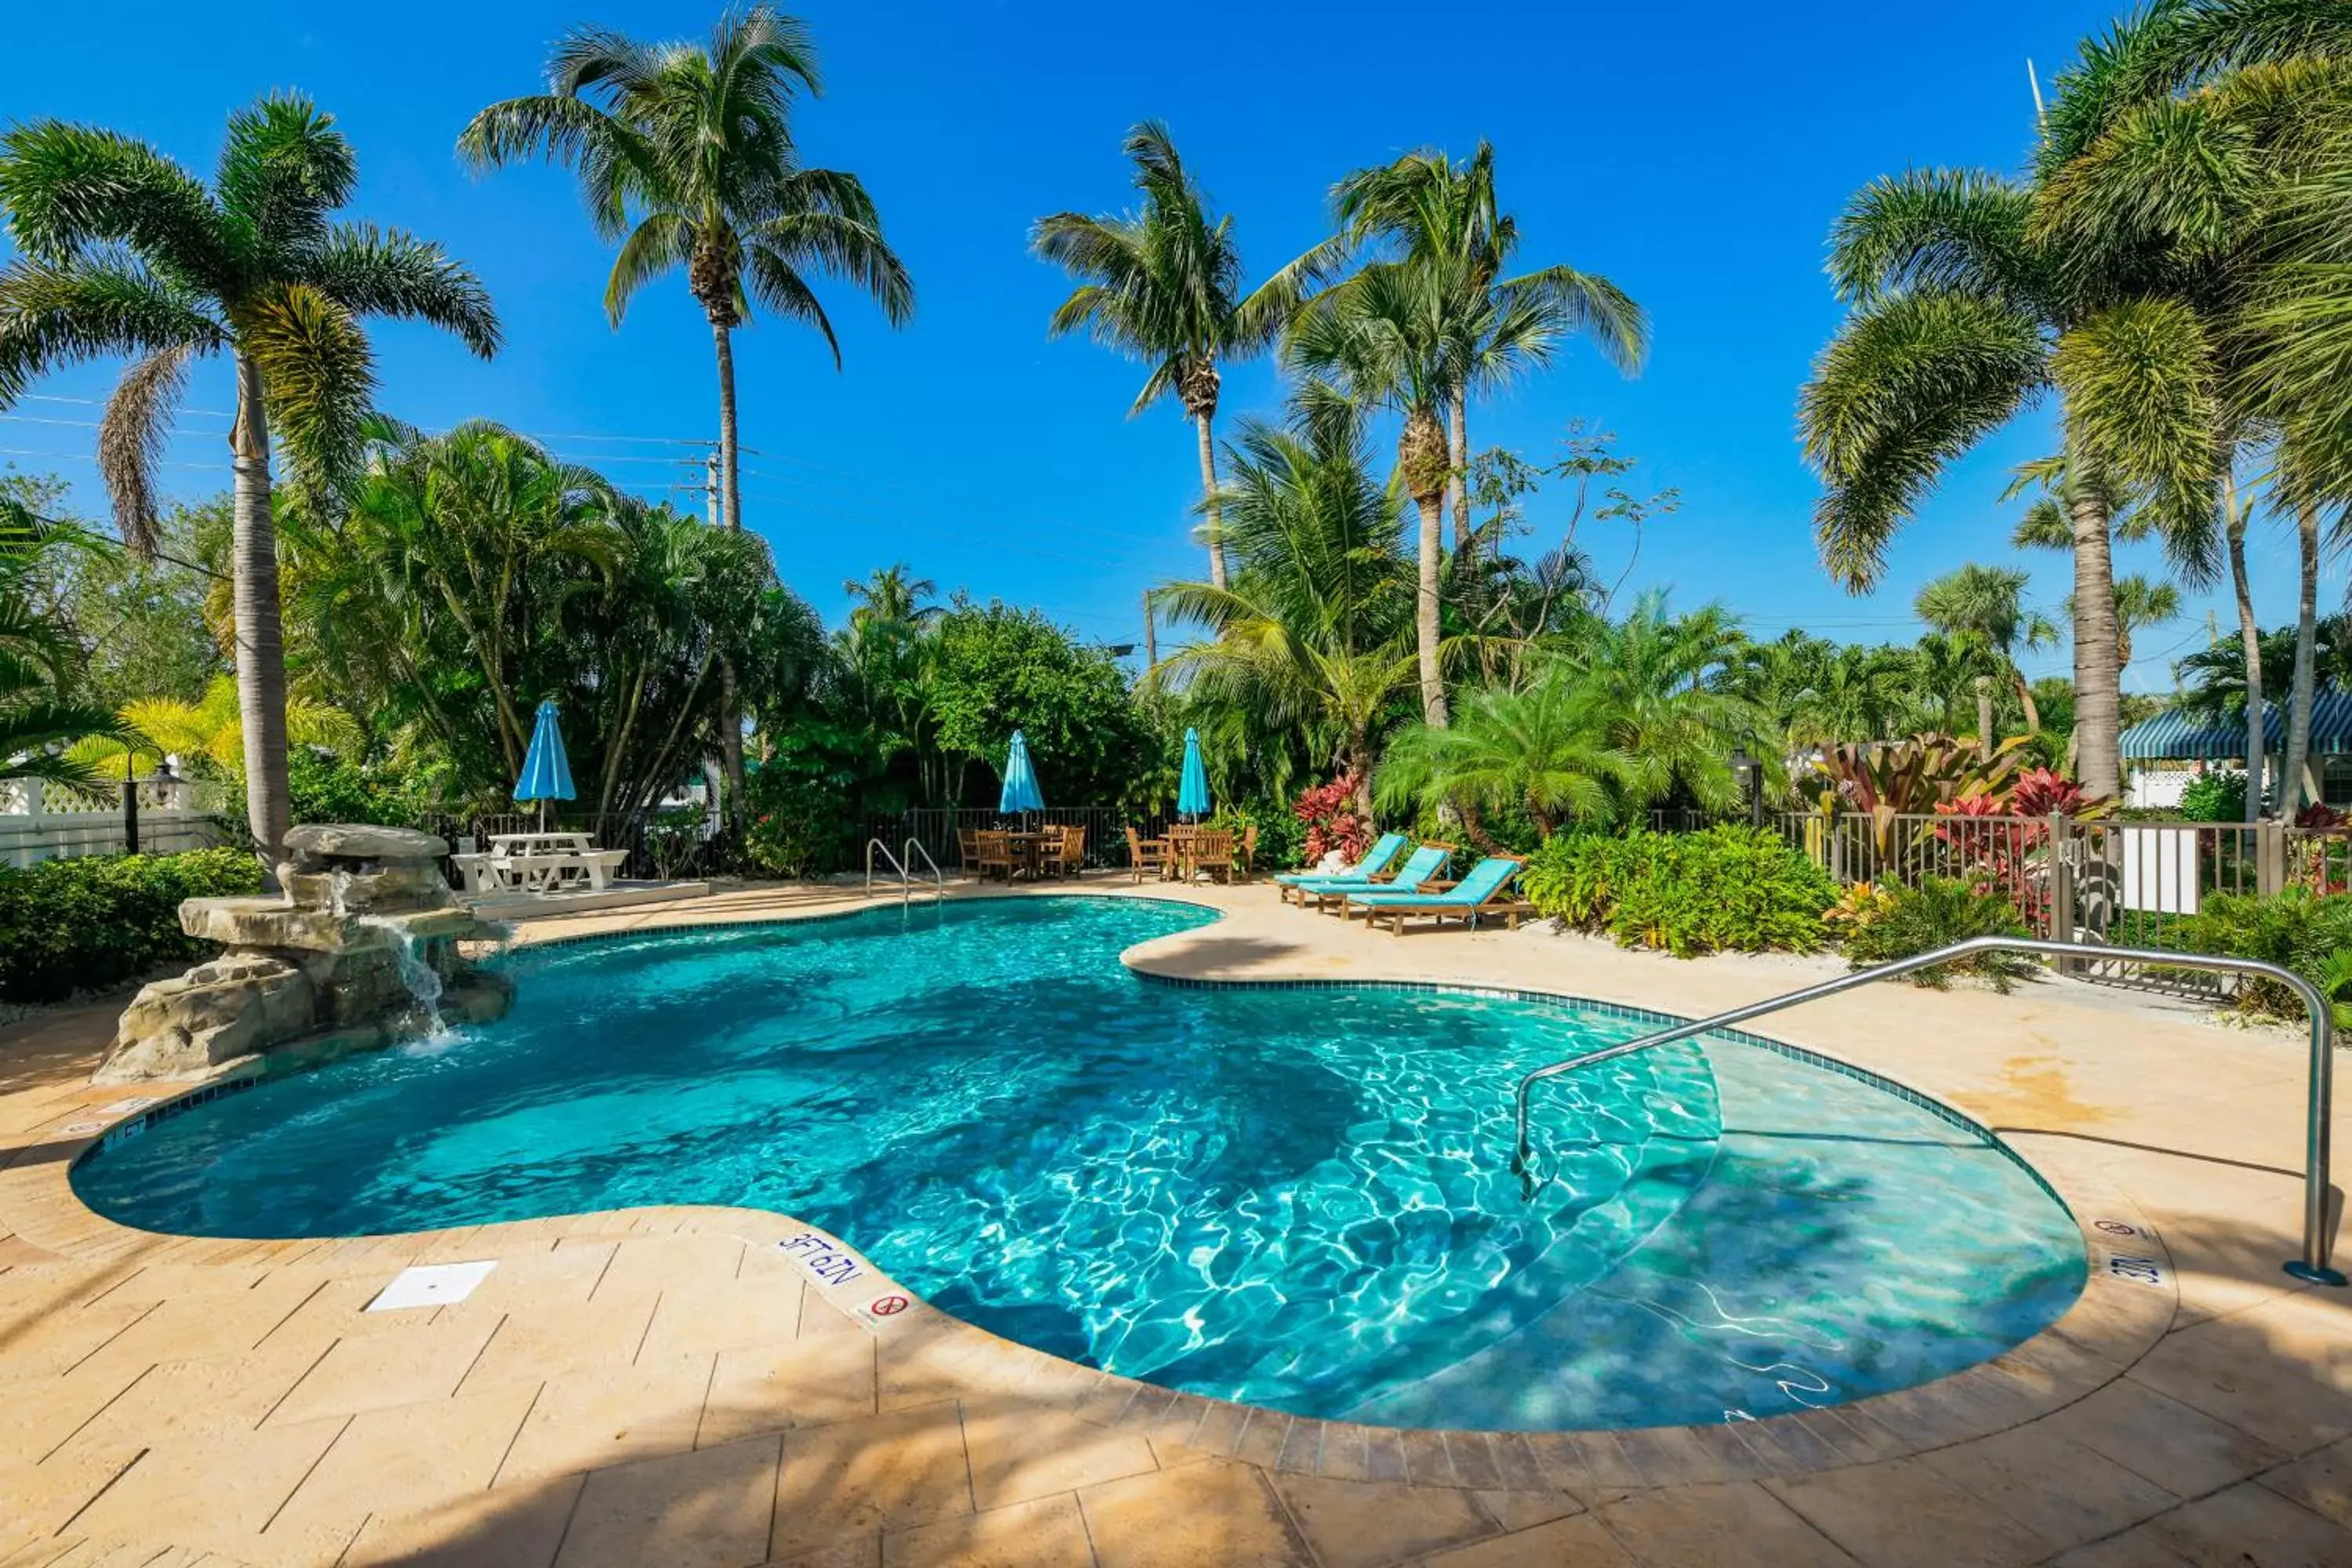 Pool view, Swimming Pool in Tropical Breeze Resort